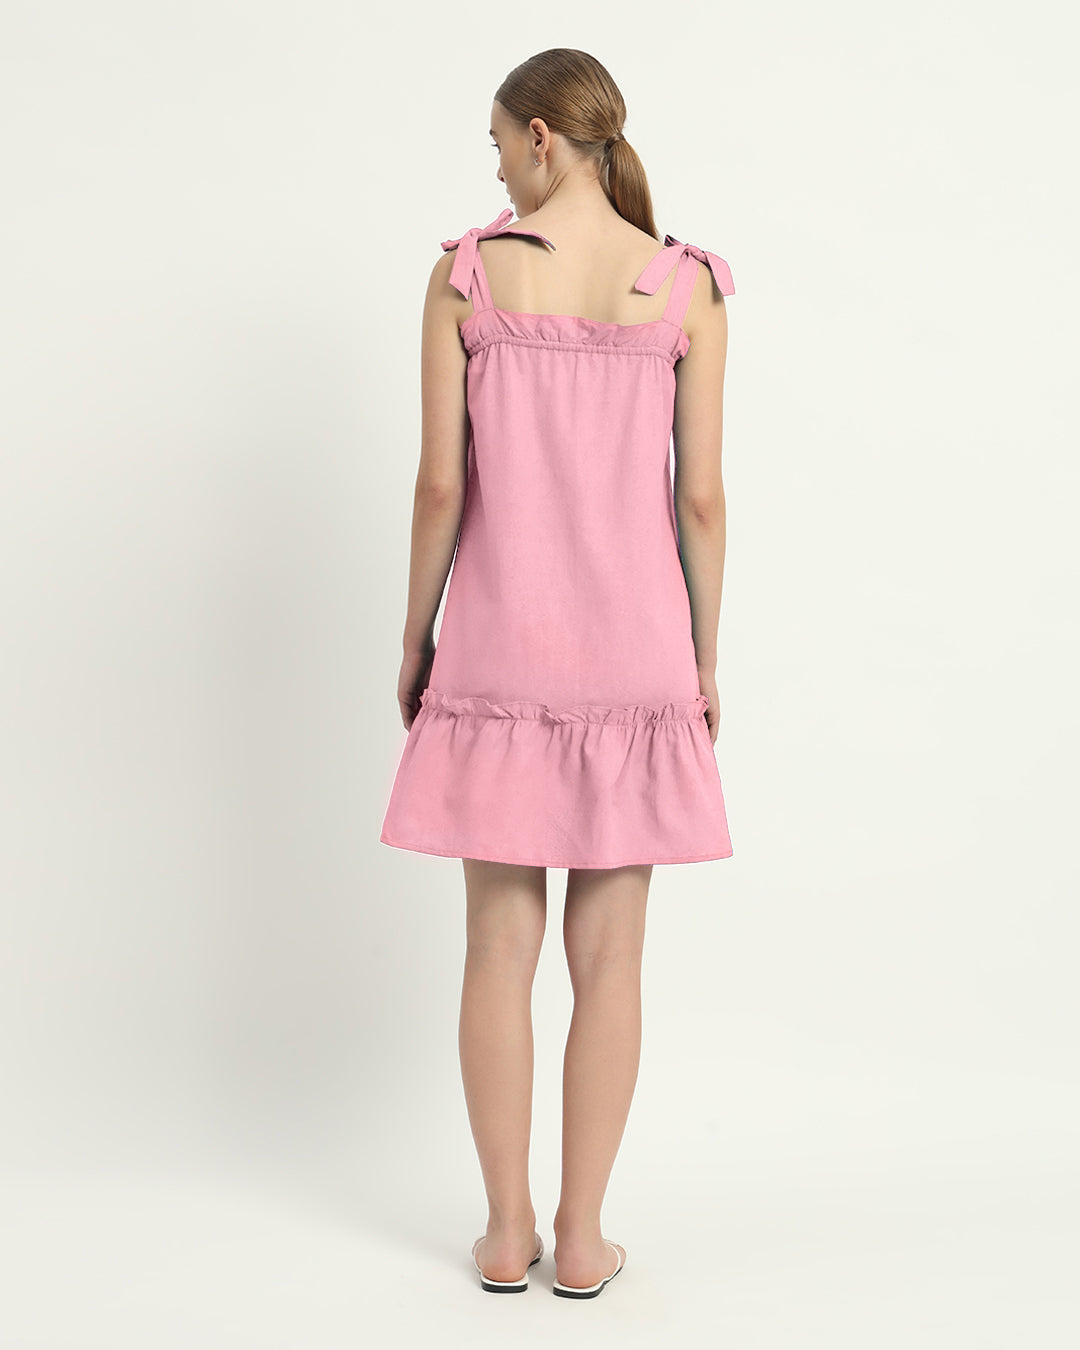 The Fondant Pink Amalfi Cotton Dress